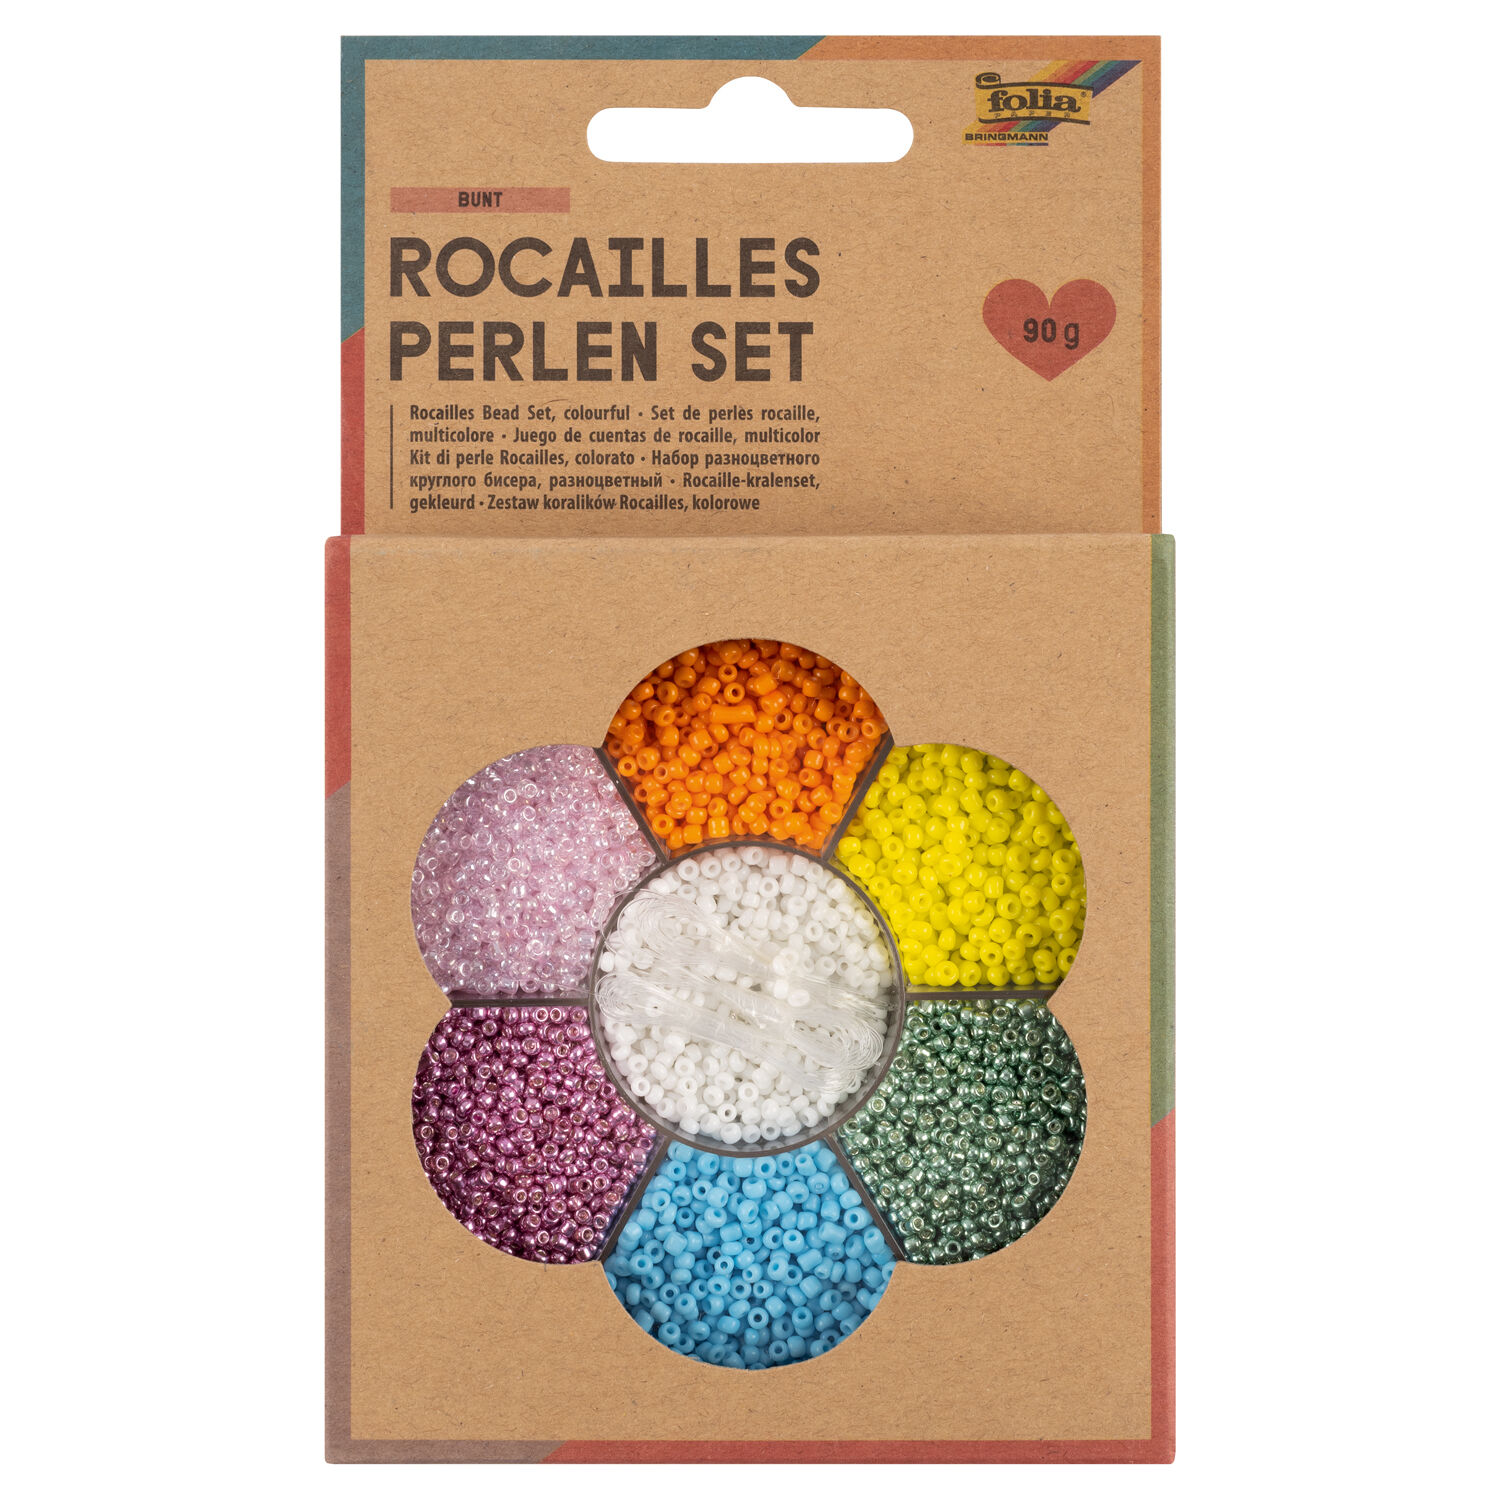 NEU Rocailles-Perlen-Set Bunt, inkl. 90g Perlen, 3x1m Nylonfaden, 3 Verschlsse